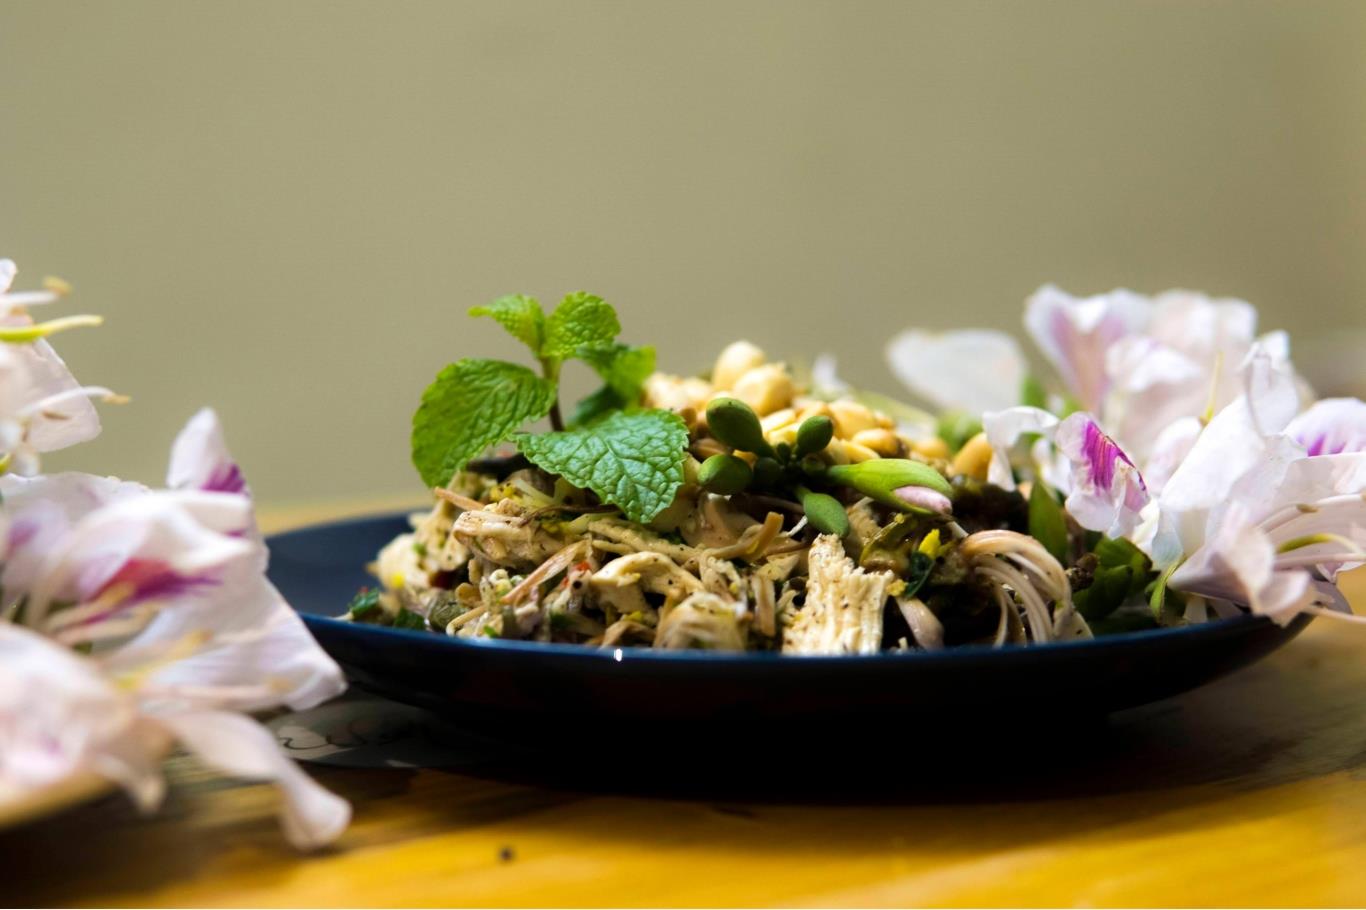 Măng nộm hoa ban là món ăn đặc sản Lai Châu ngọt bùi